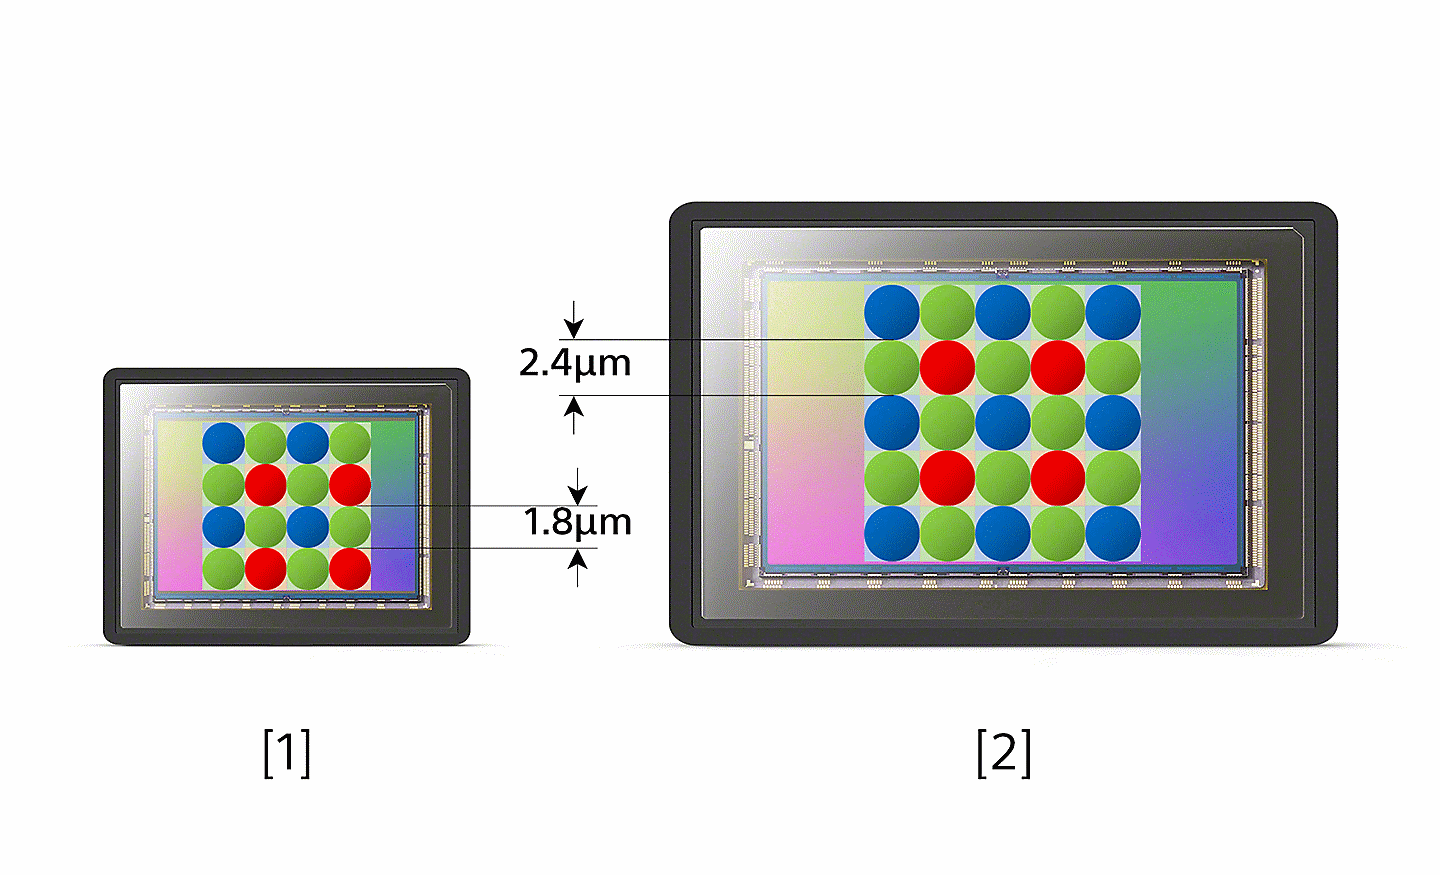 Diagram porovnávajúci rozstup pixelov bežného obrazového snímača s obrazovým snímačom typu Xperia 1.0